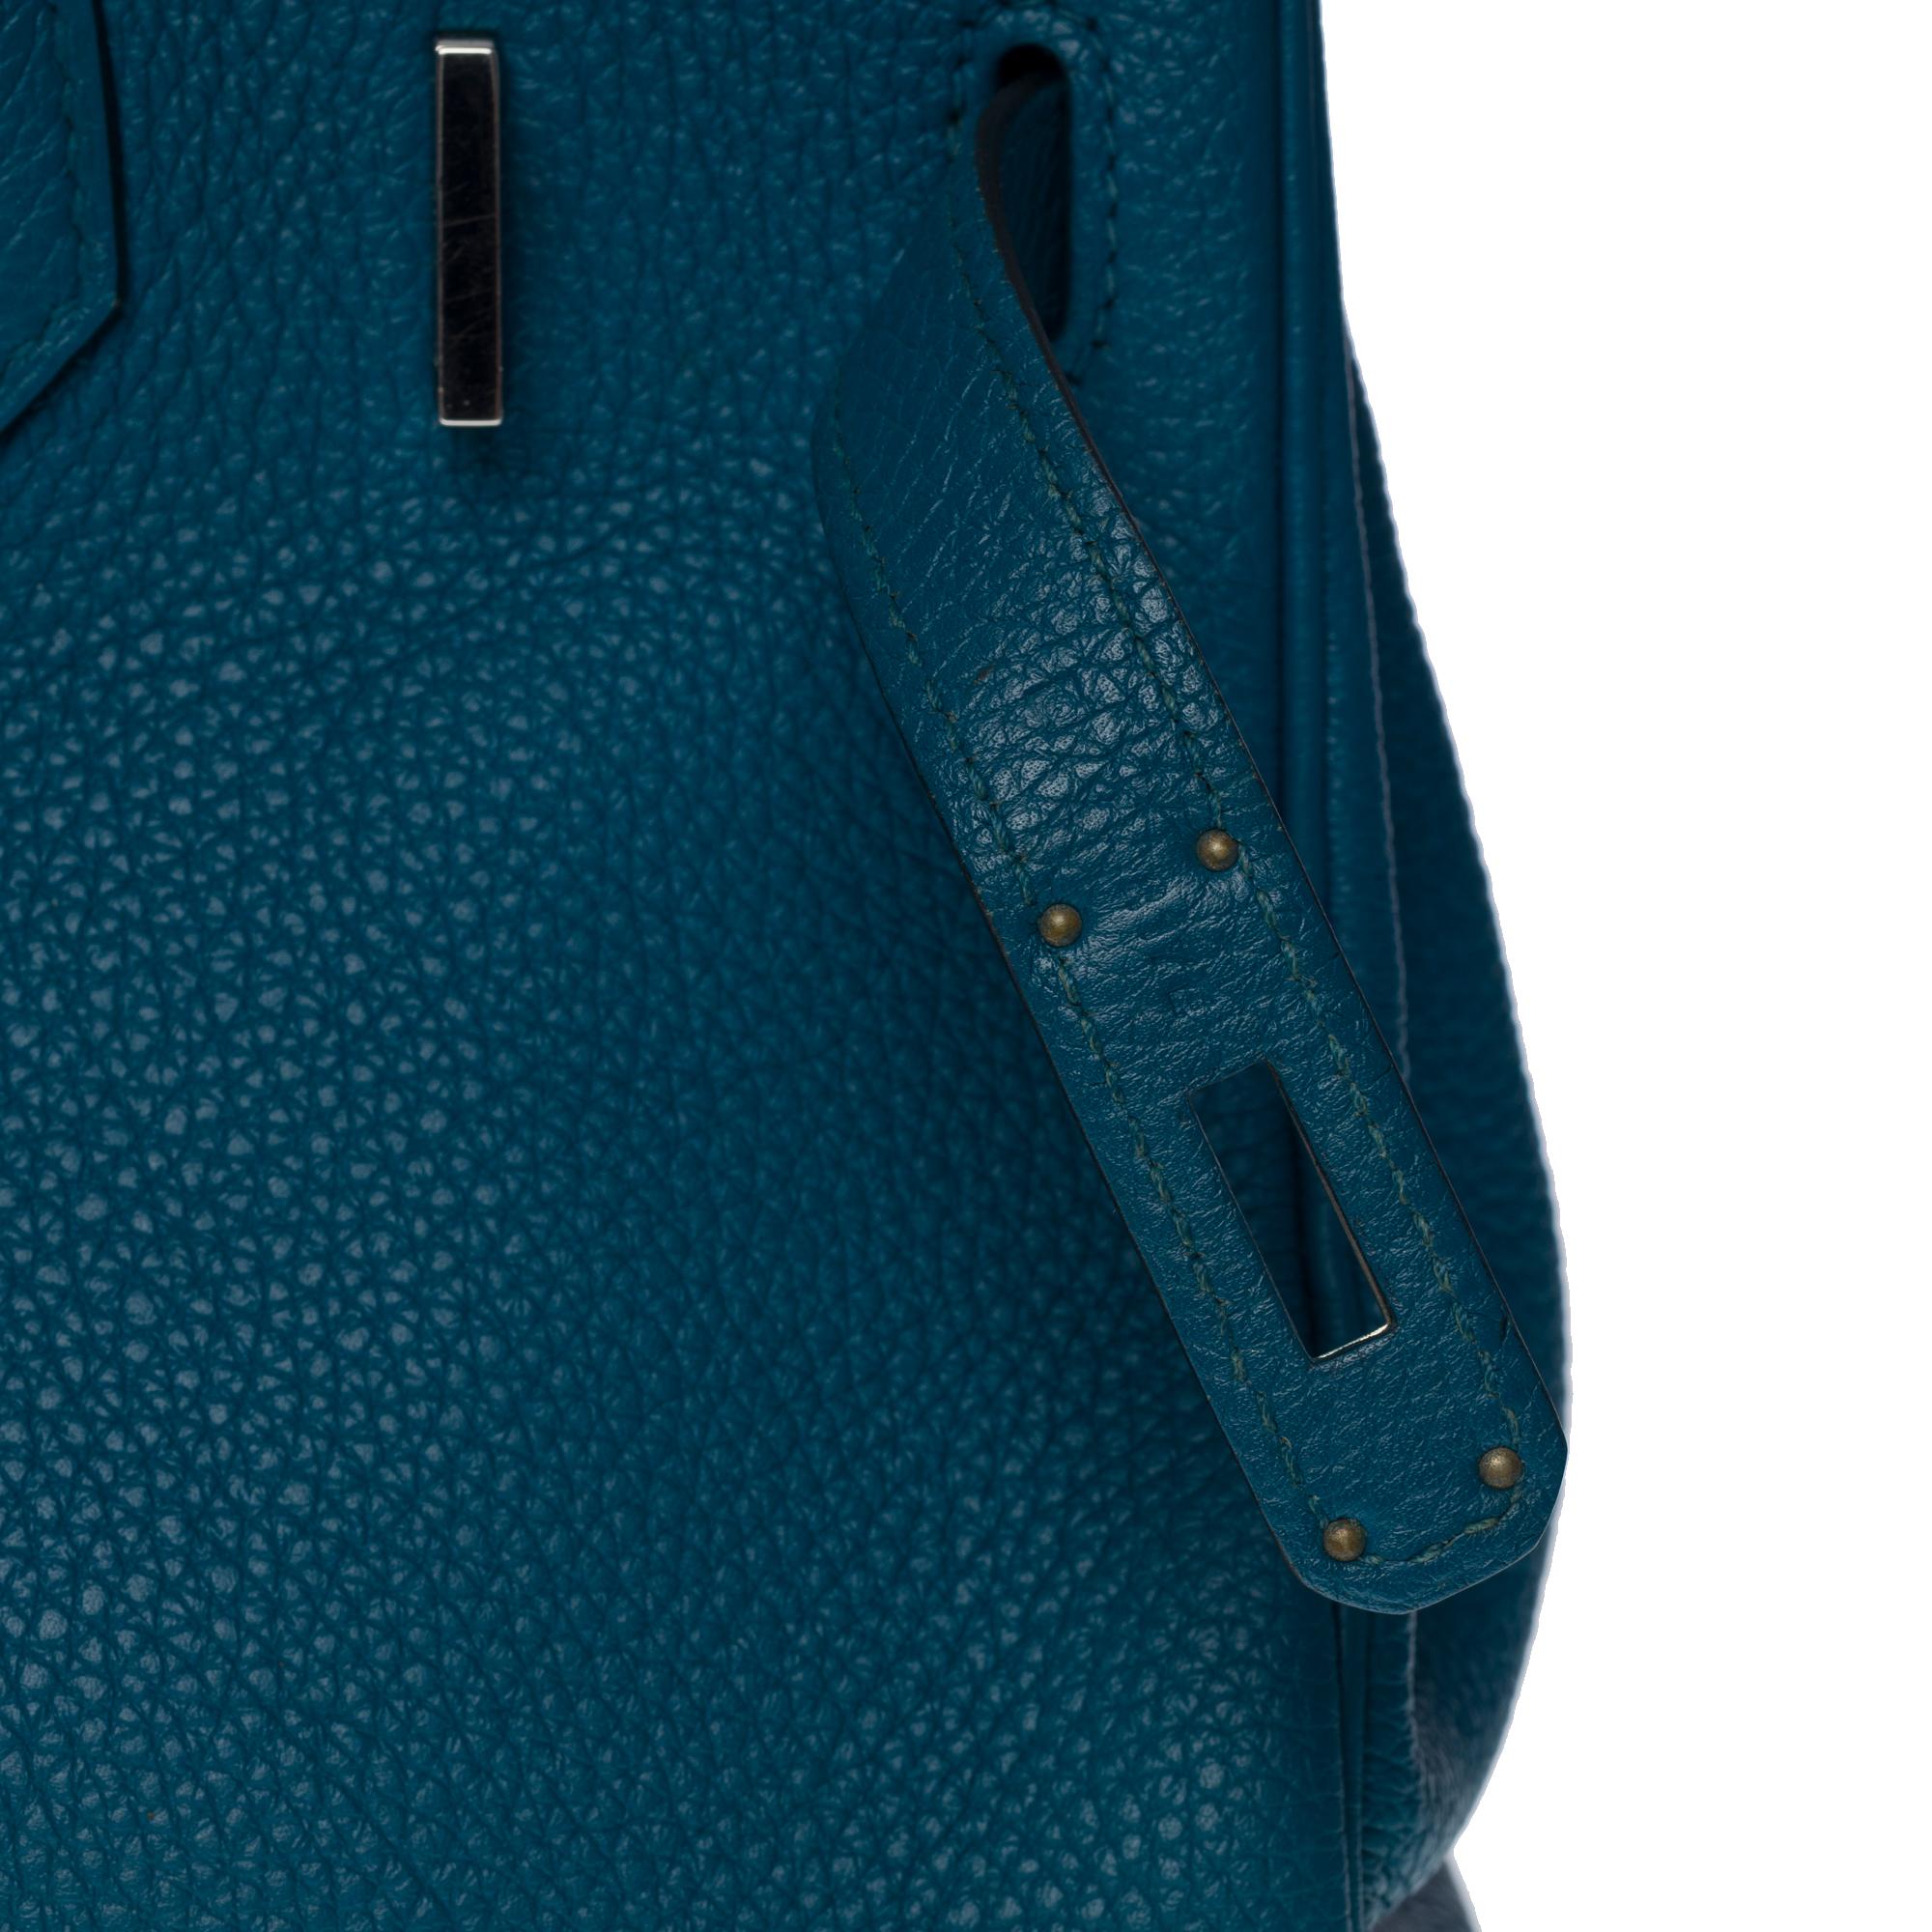 Amazing Hermès Birkin 30 handbag in Blue Colvert Togo leather, SHW 3